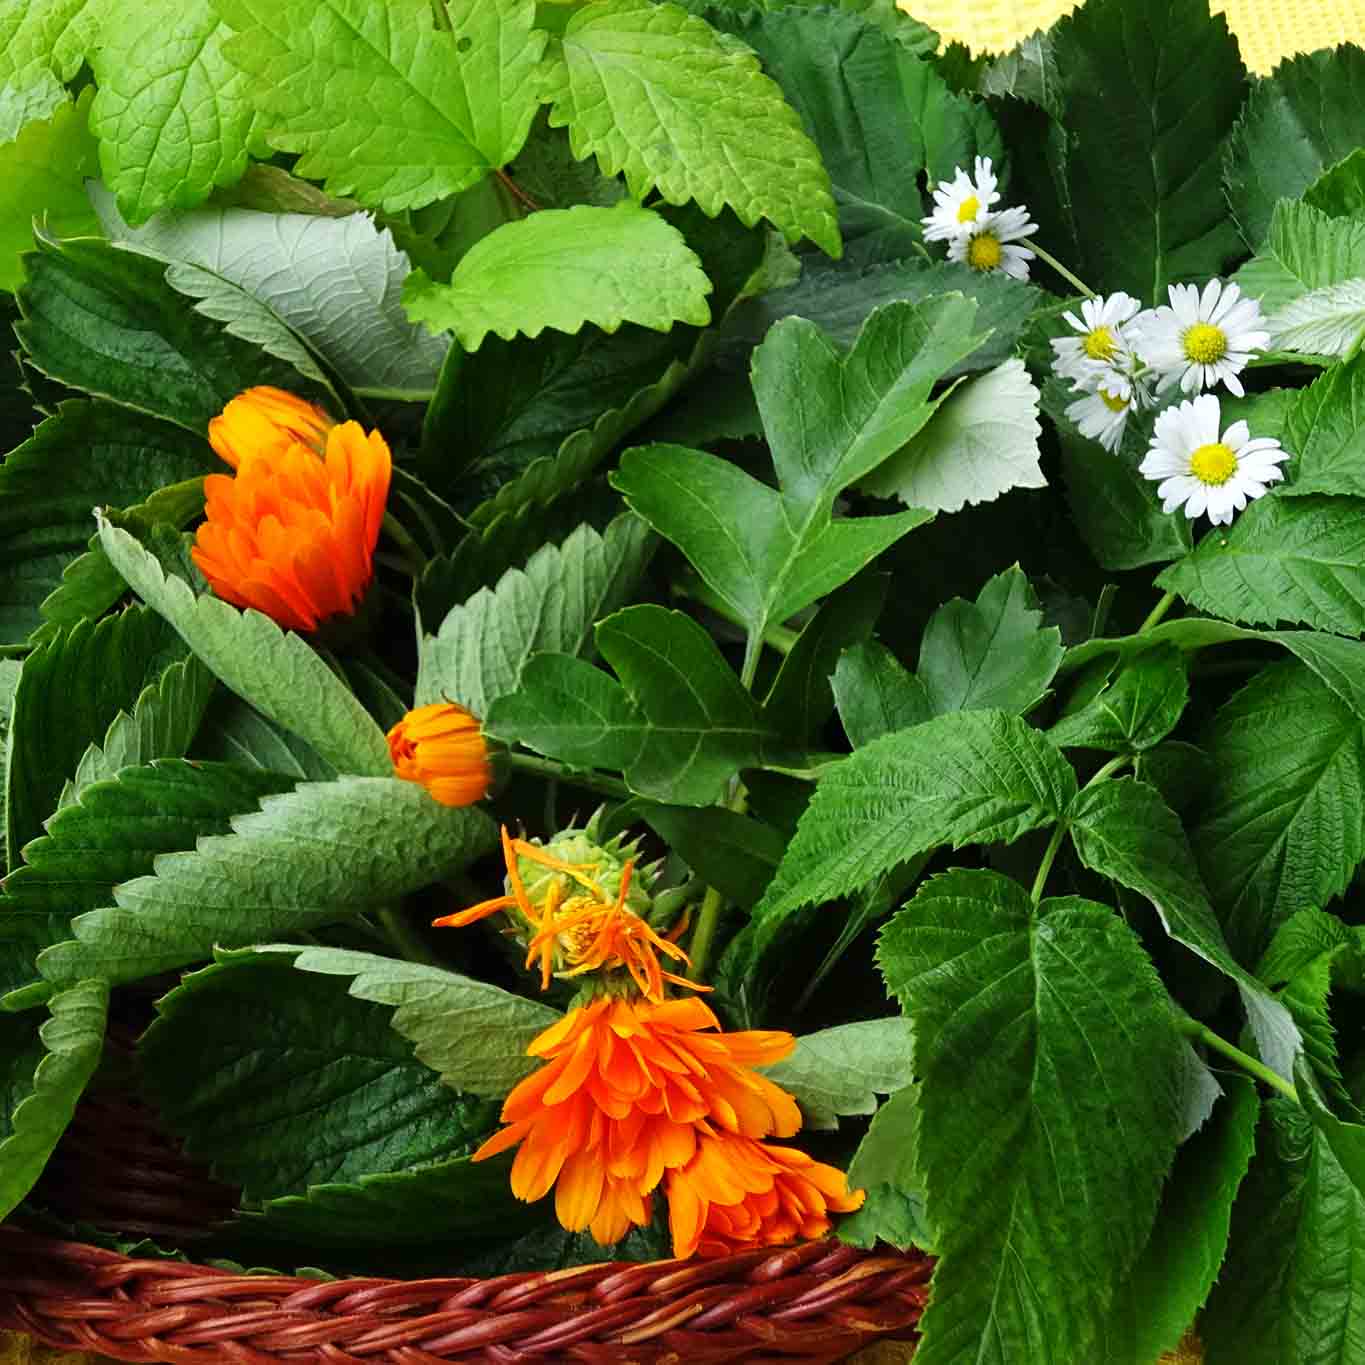 Brombeerblätter, Himbeerblätter, Erdbeerblätter, Melisse, Pfefferminze, Ringelblumen und Gänseblümchen sind die Ingridencien für einen aromatischen Haustee.